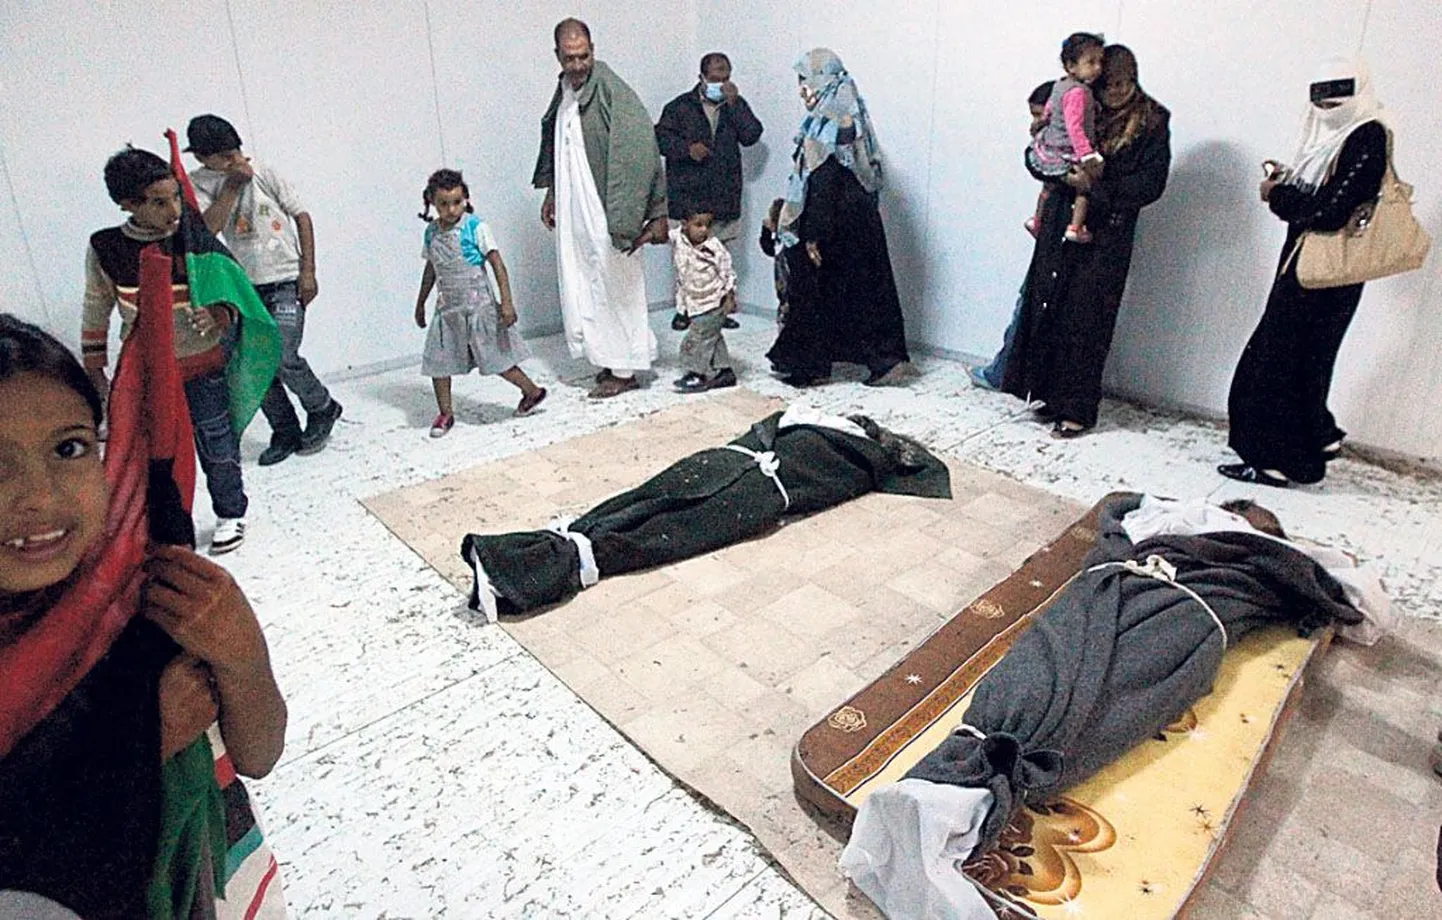 Tuhanded liibüalased käisid isegi koos lastega vaatamas Gaddafi ja tema lähikondsete surnukehi.